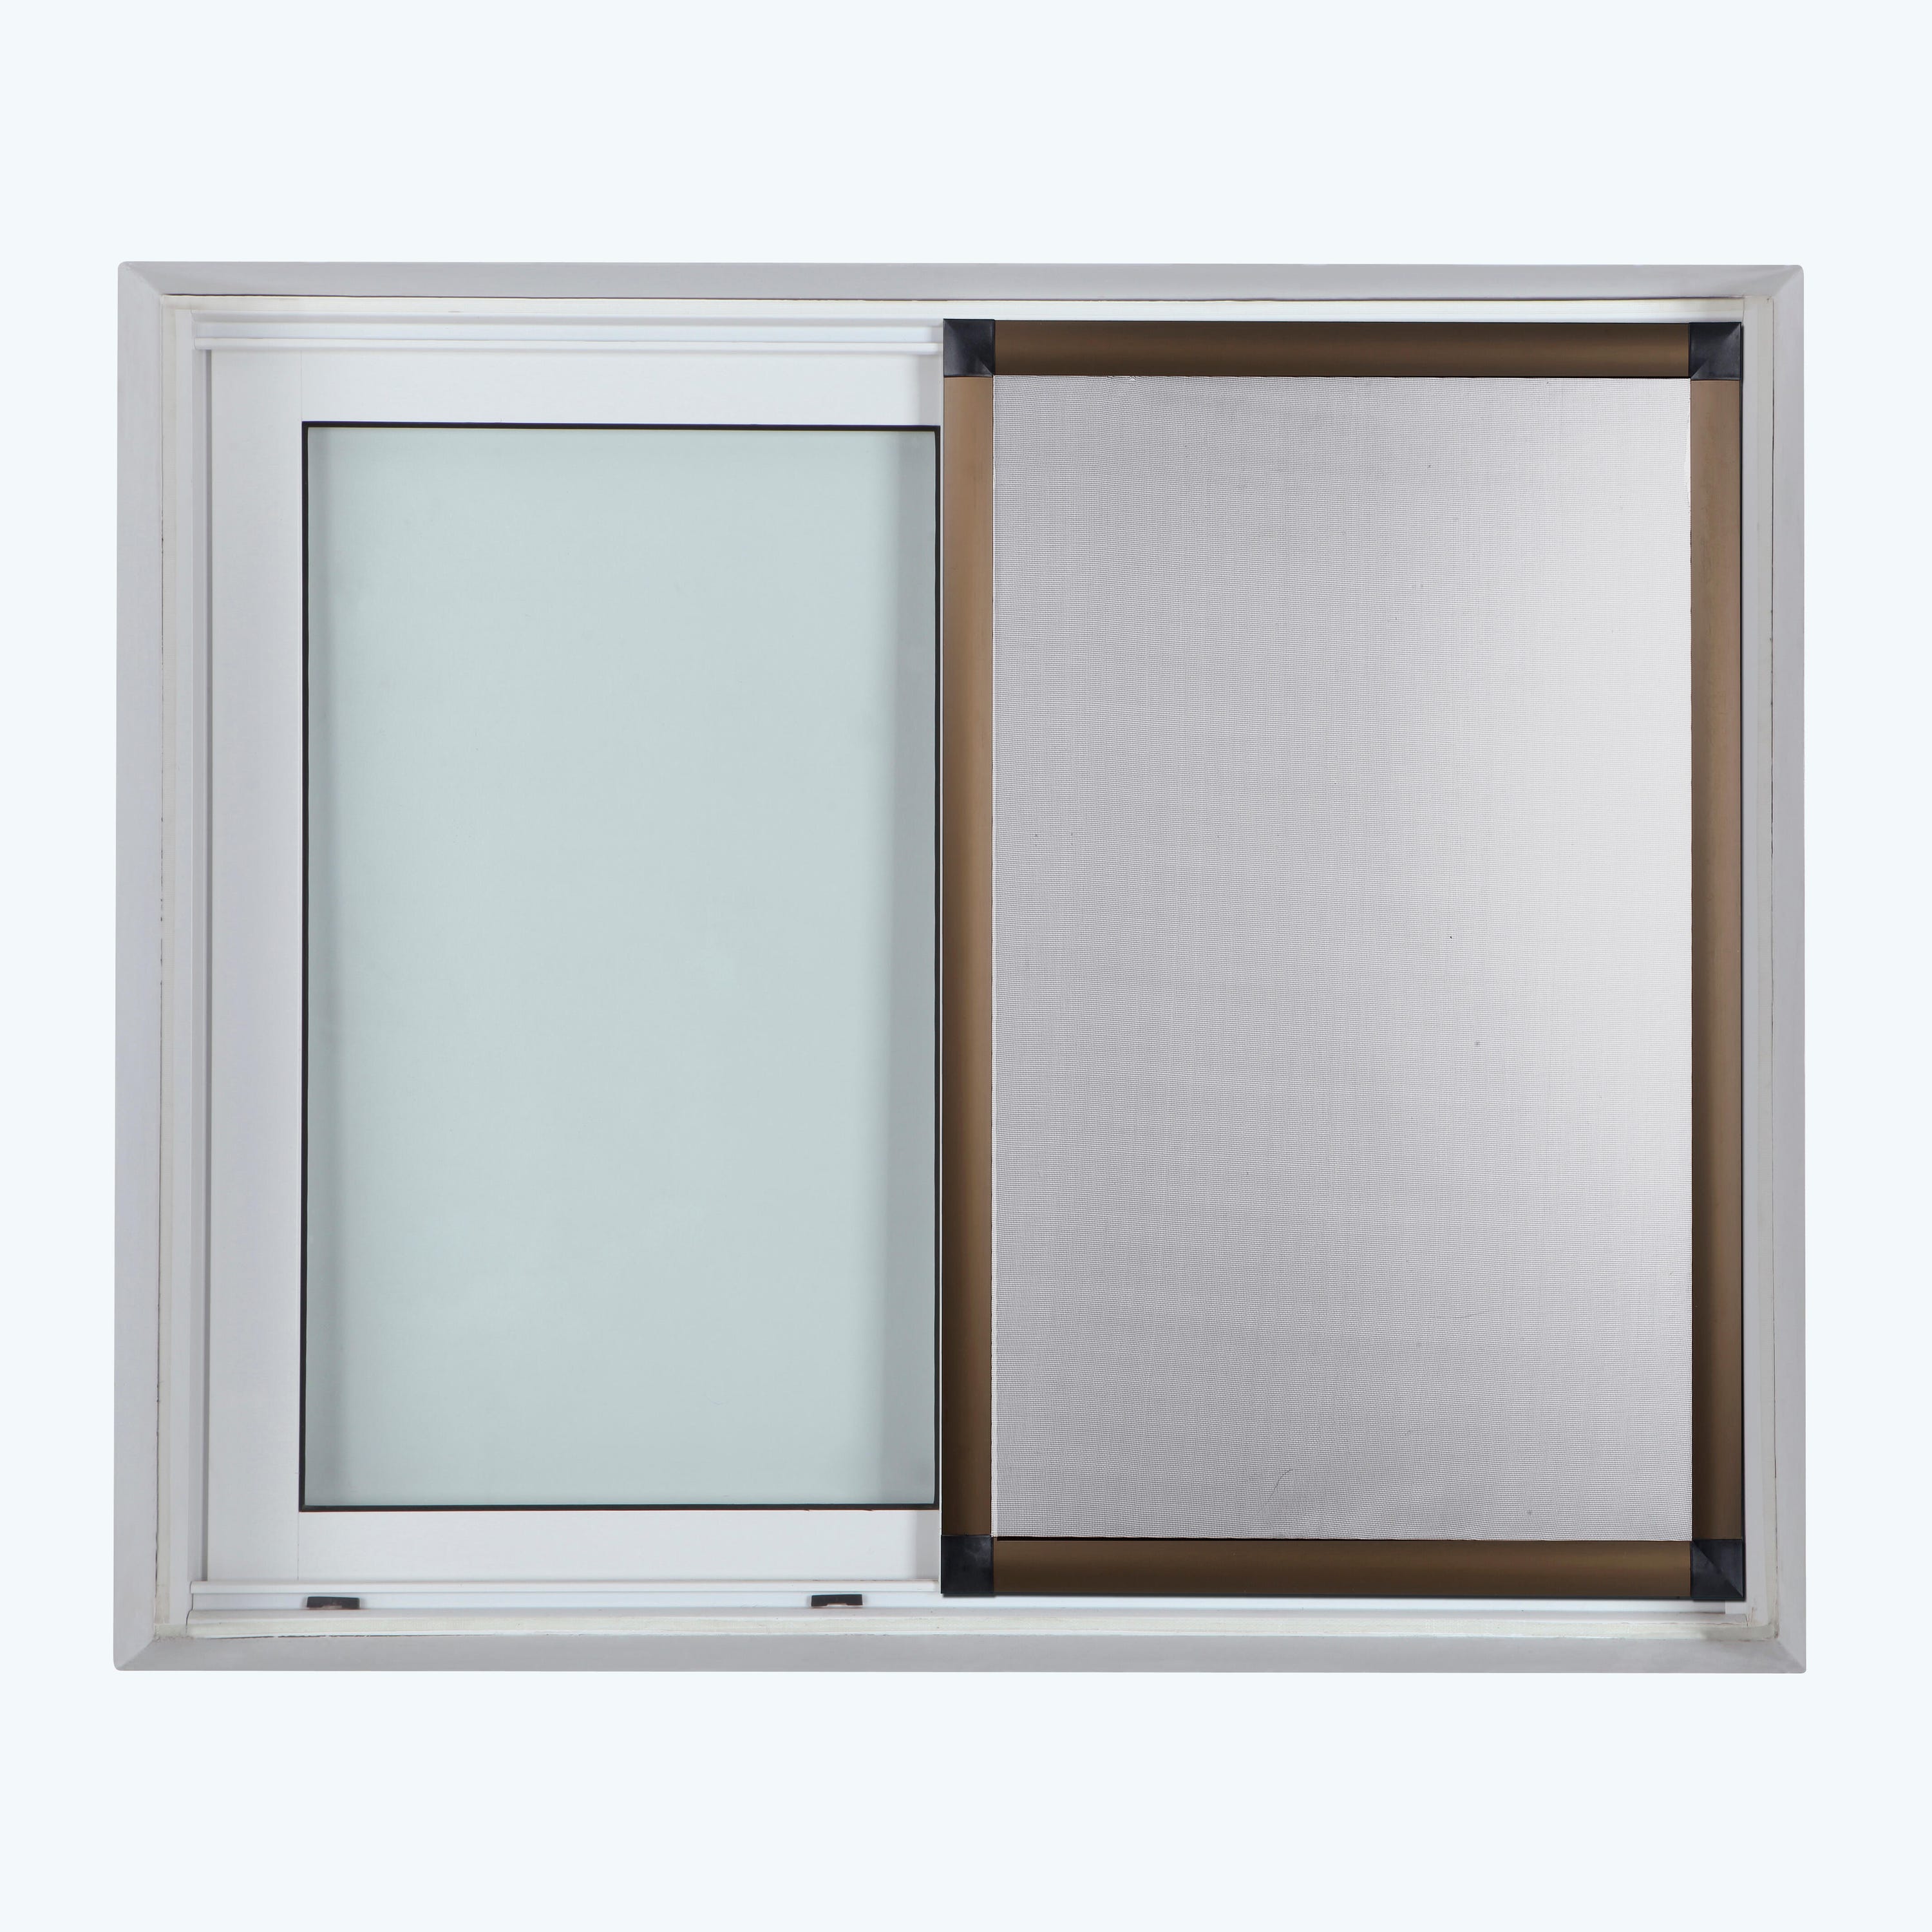 Mosquitera corredera blanco para ventana de 70x130 cm